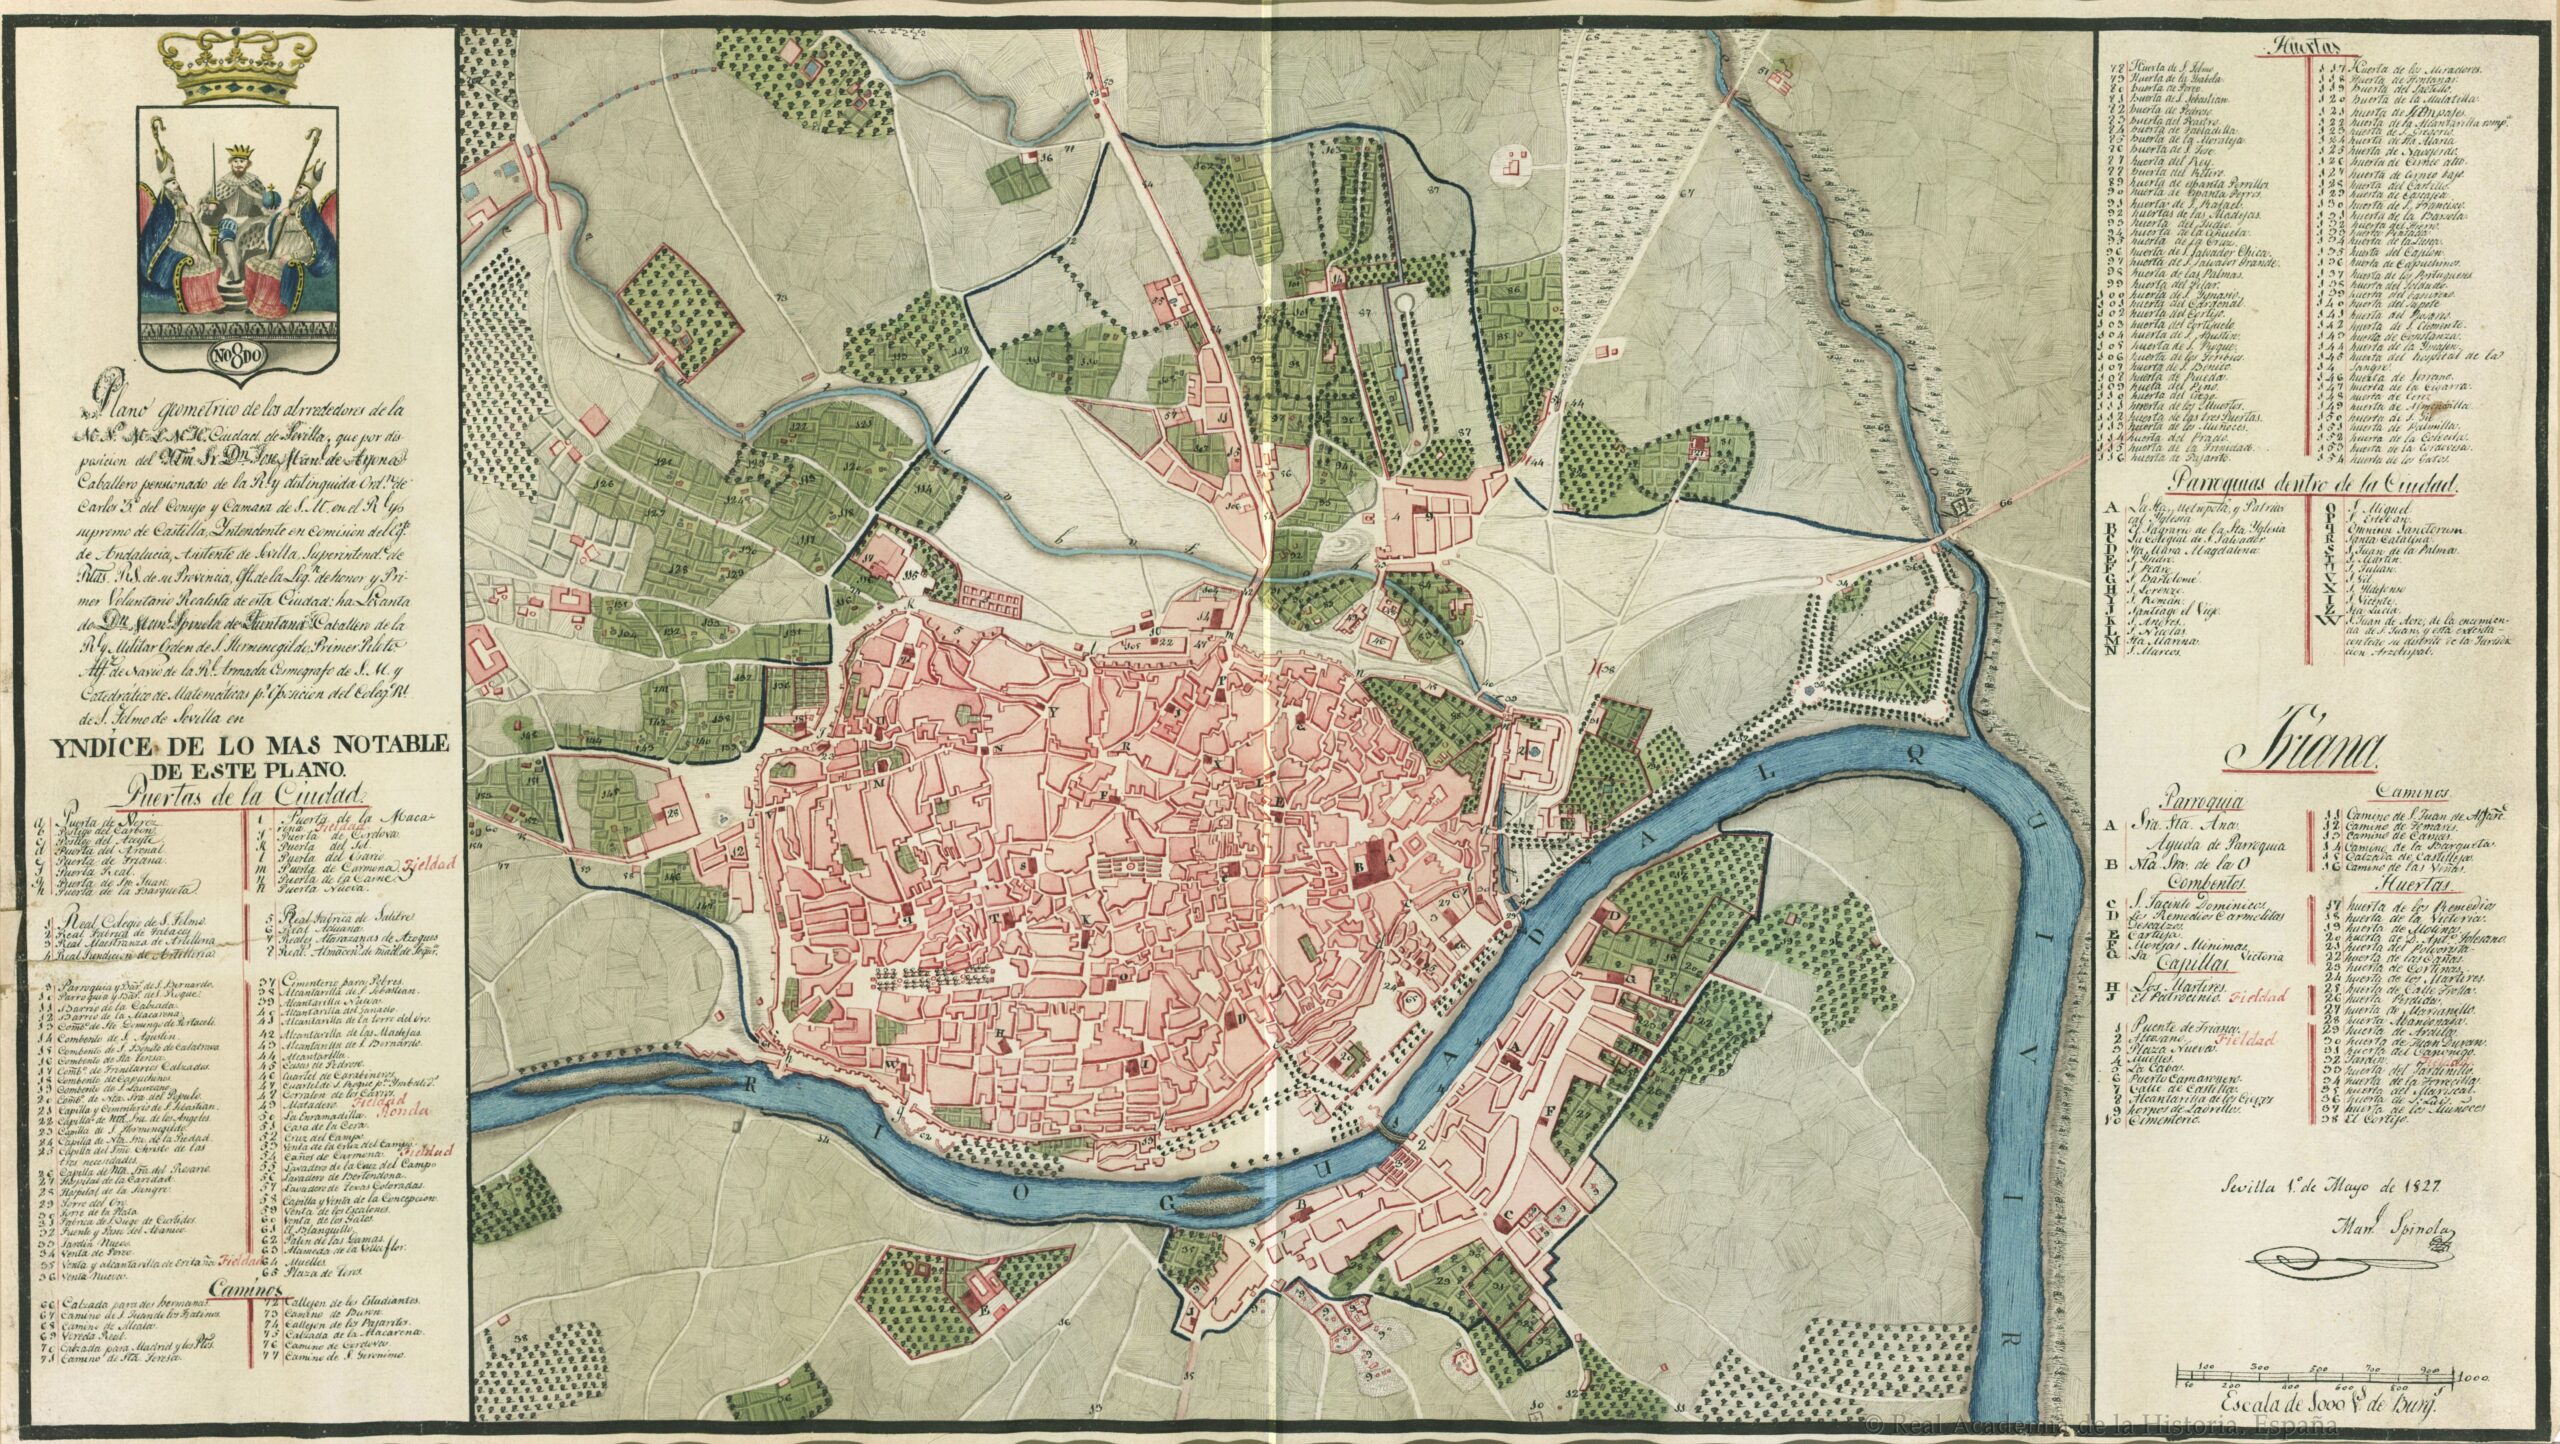 Plano de Sevilla y alrededores (1827)